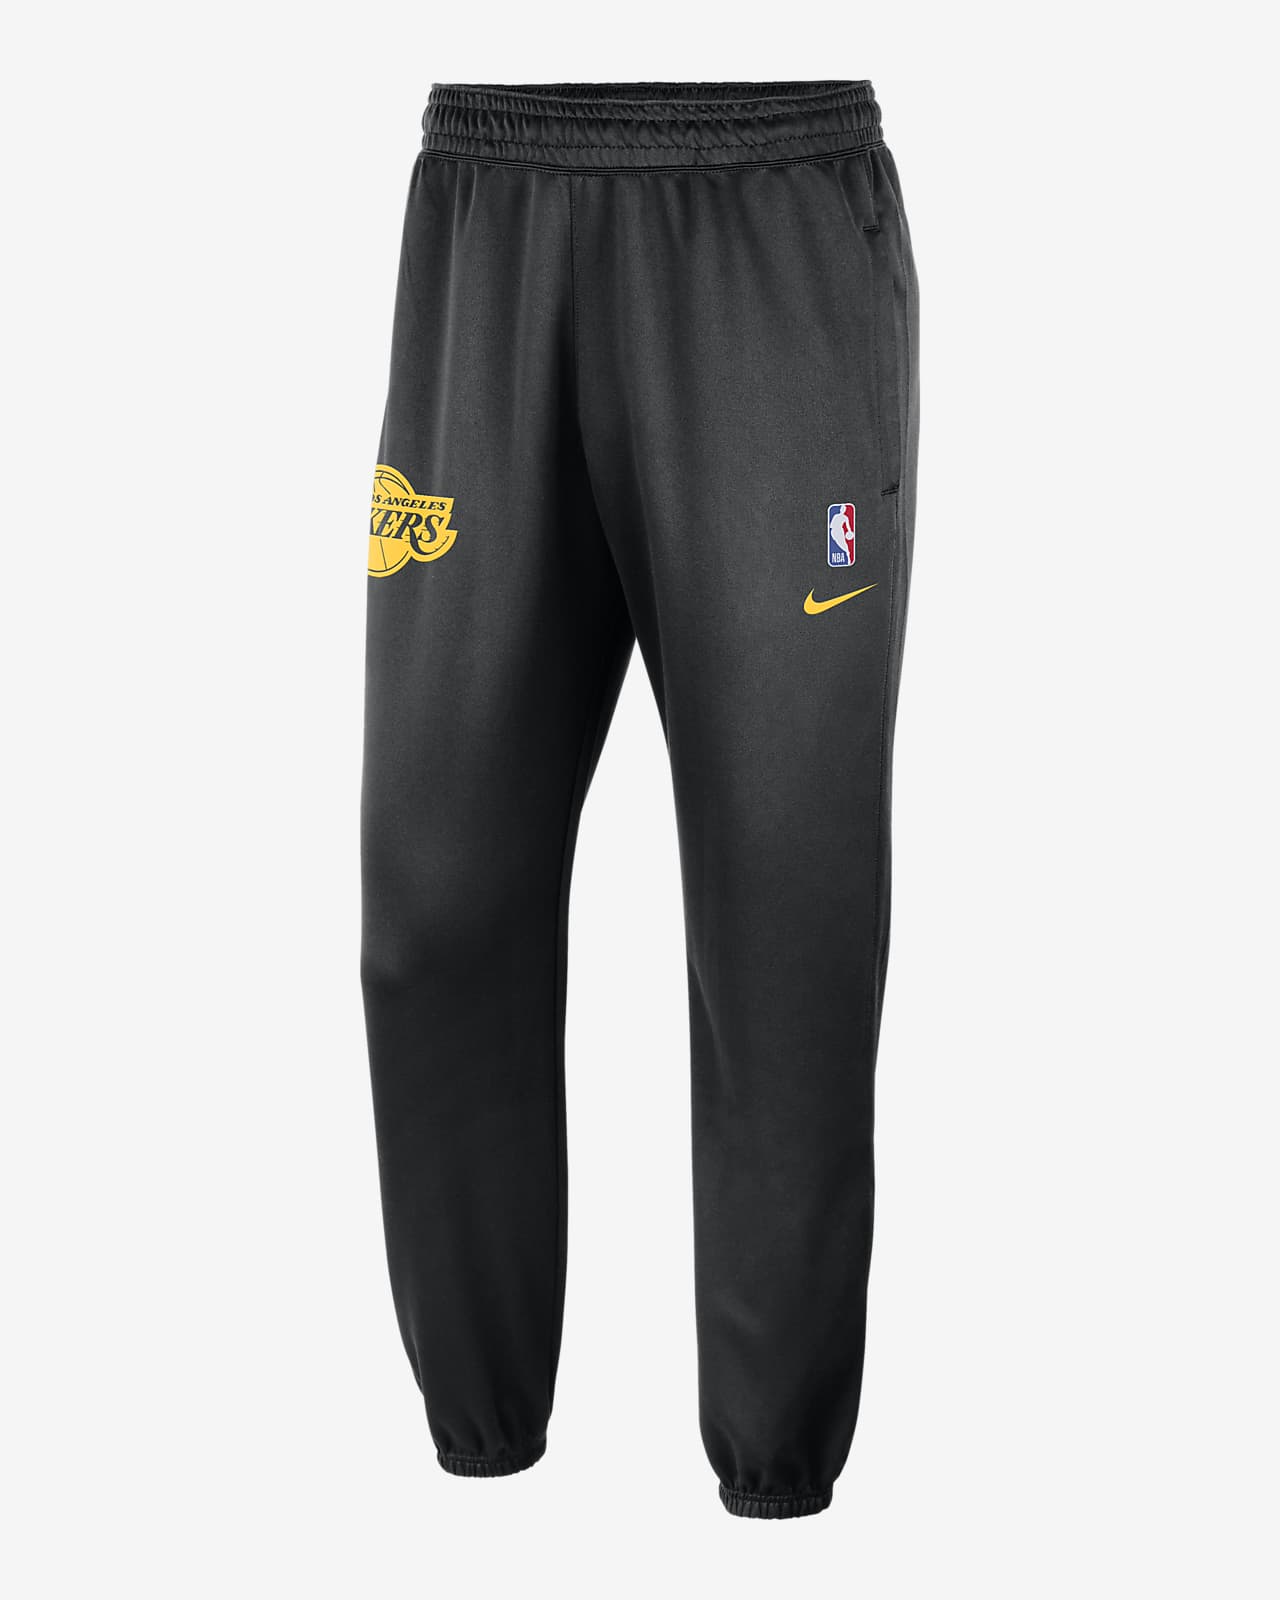 Ανδρικό παντελόνι Nike Dri-FIT NBA Λος Άντζελες Λέικερς Spotlight